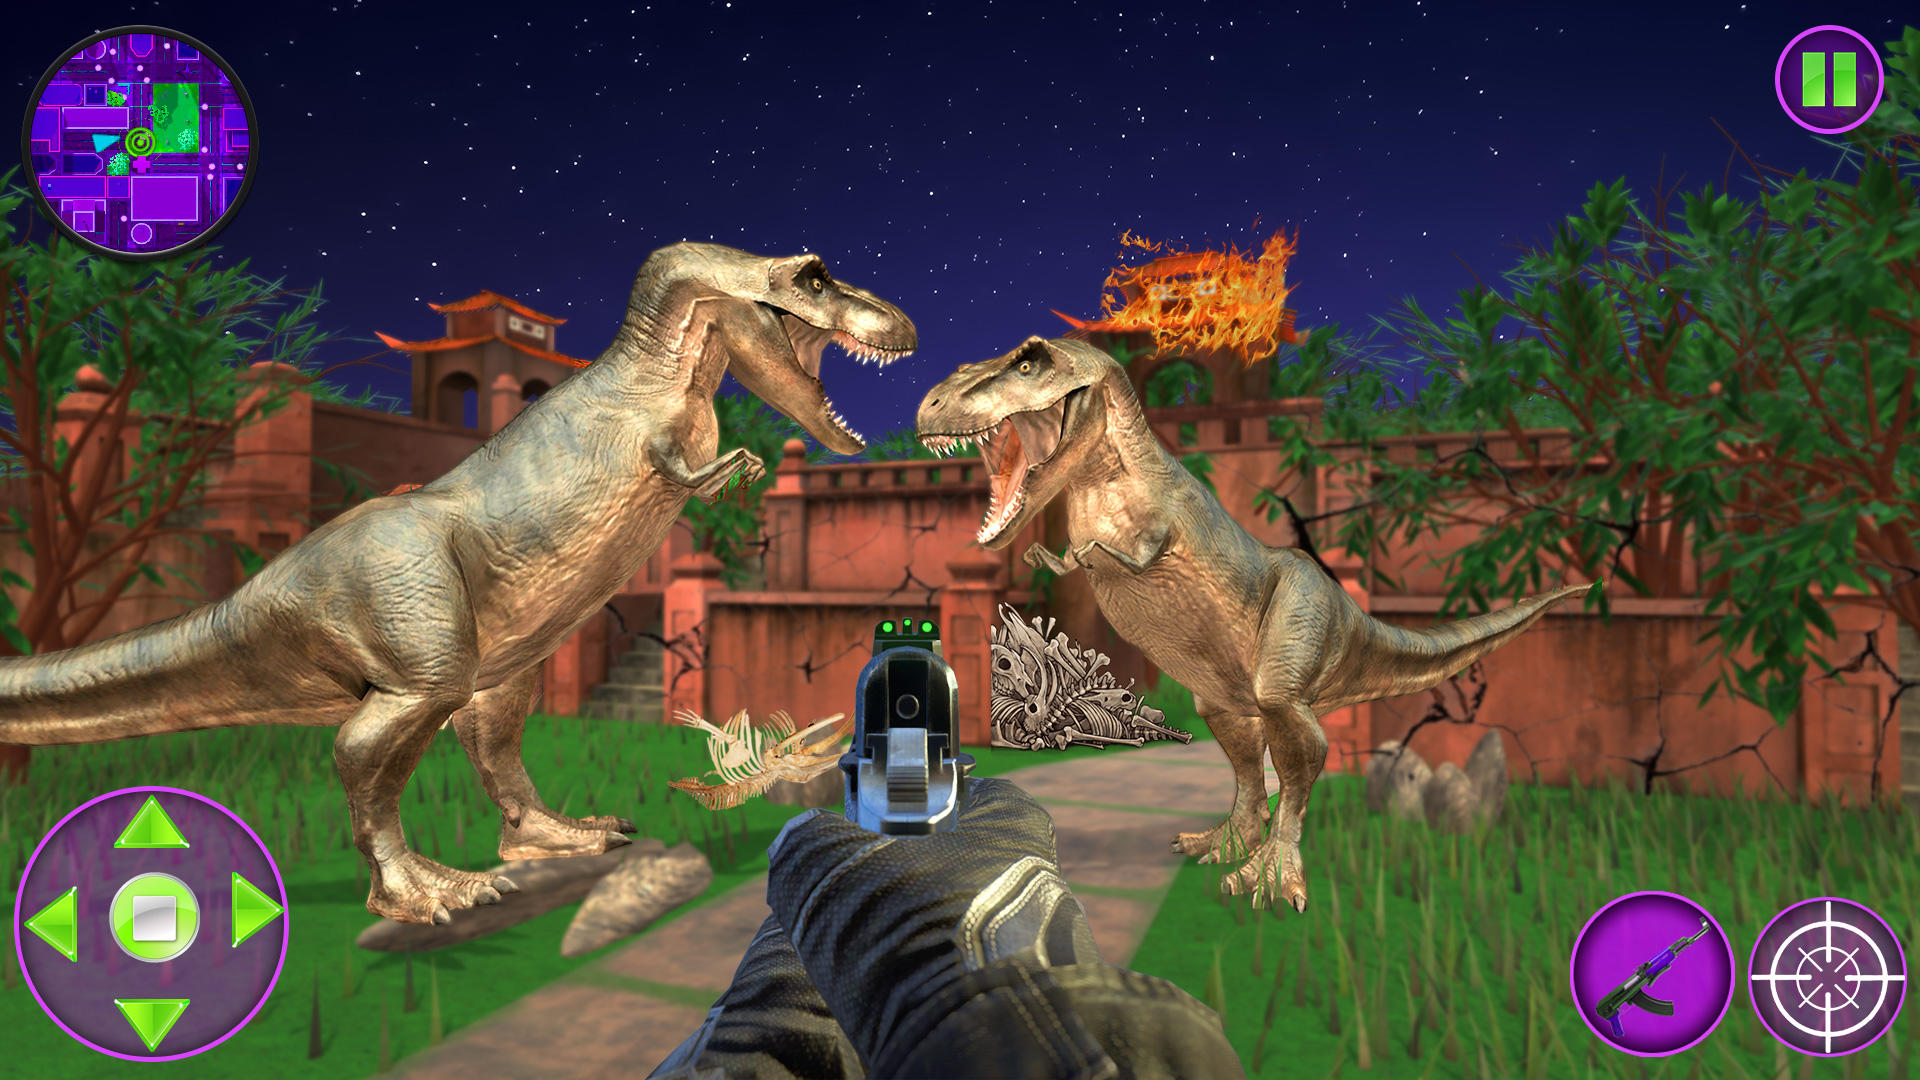 Dinosaur Hunter 3D Game. Dinosaur games are very popular…